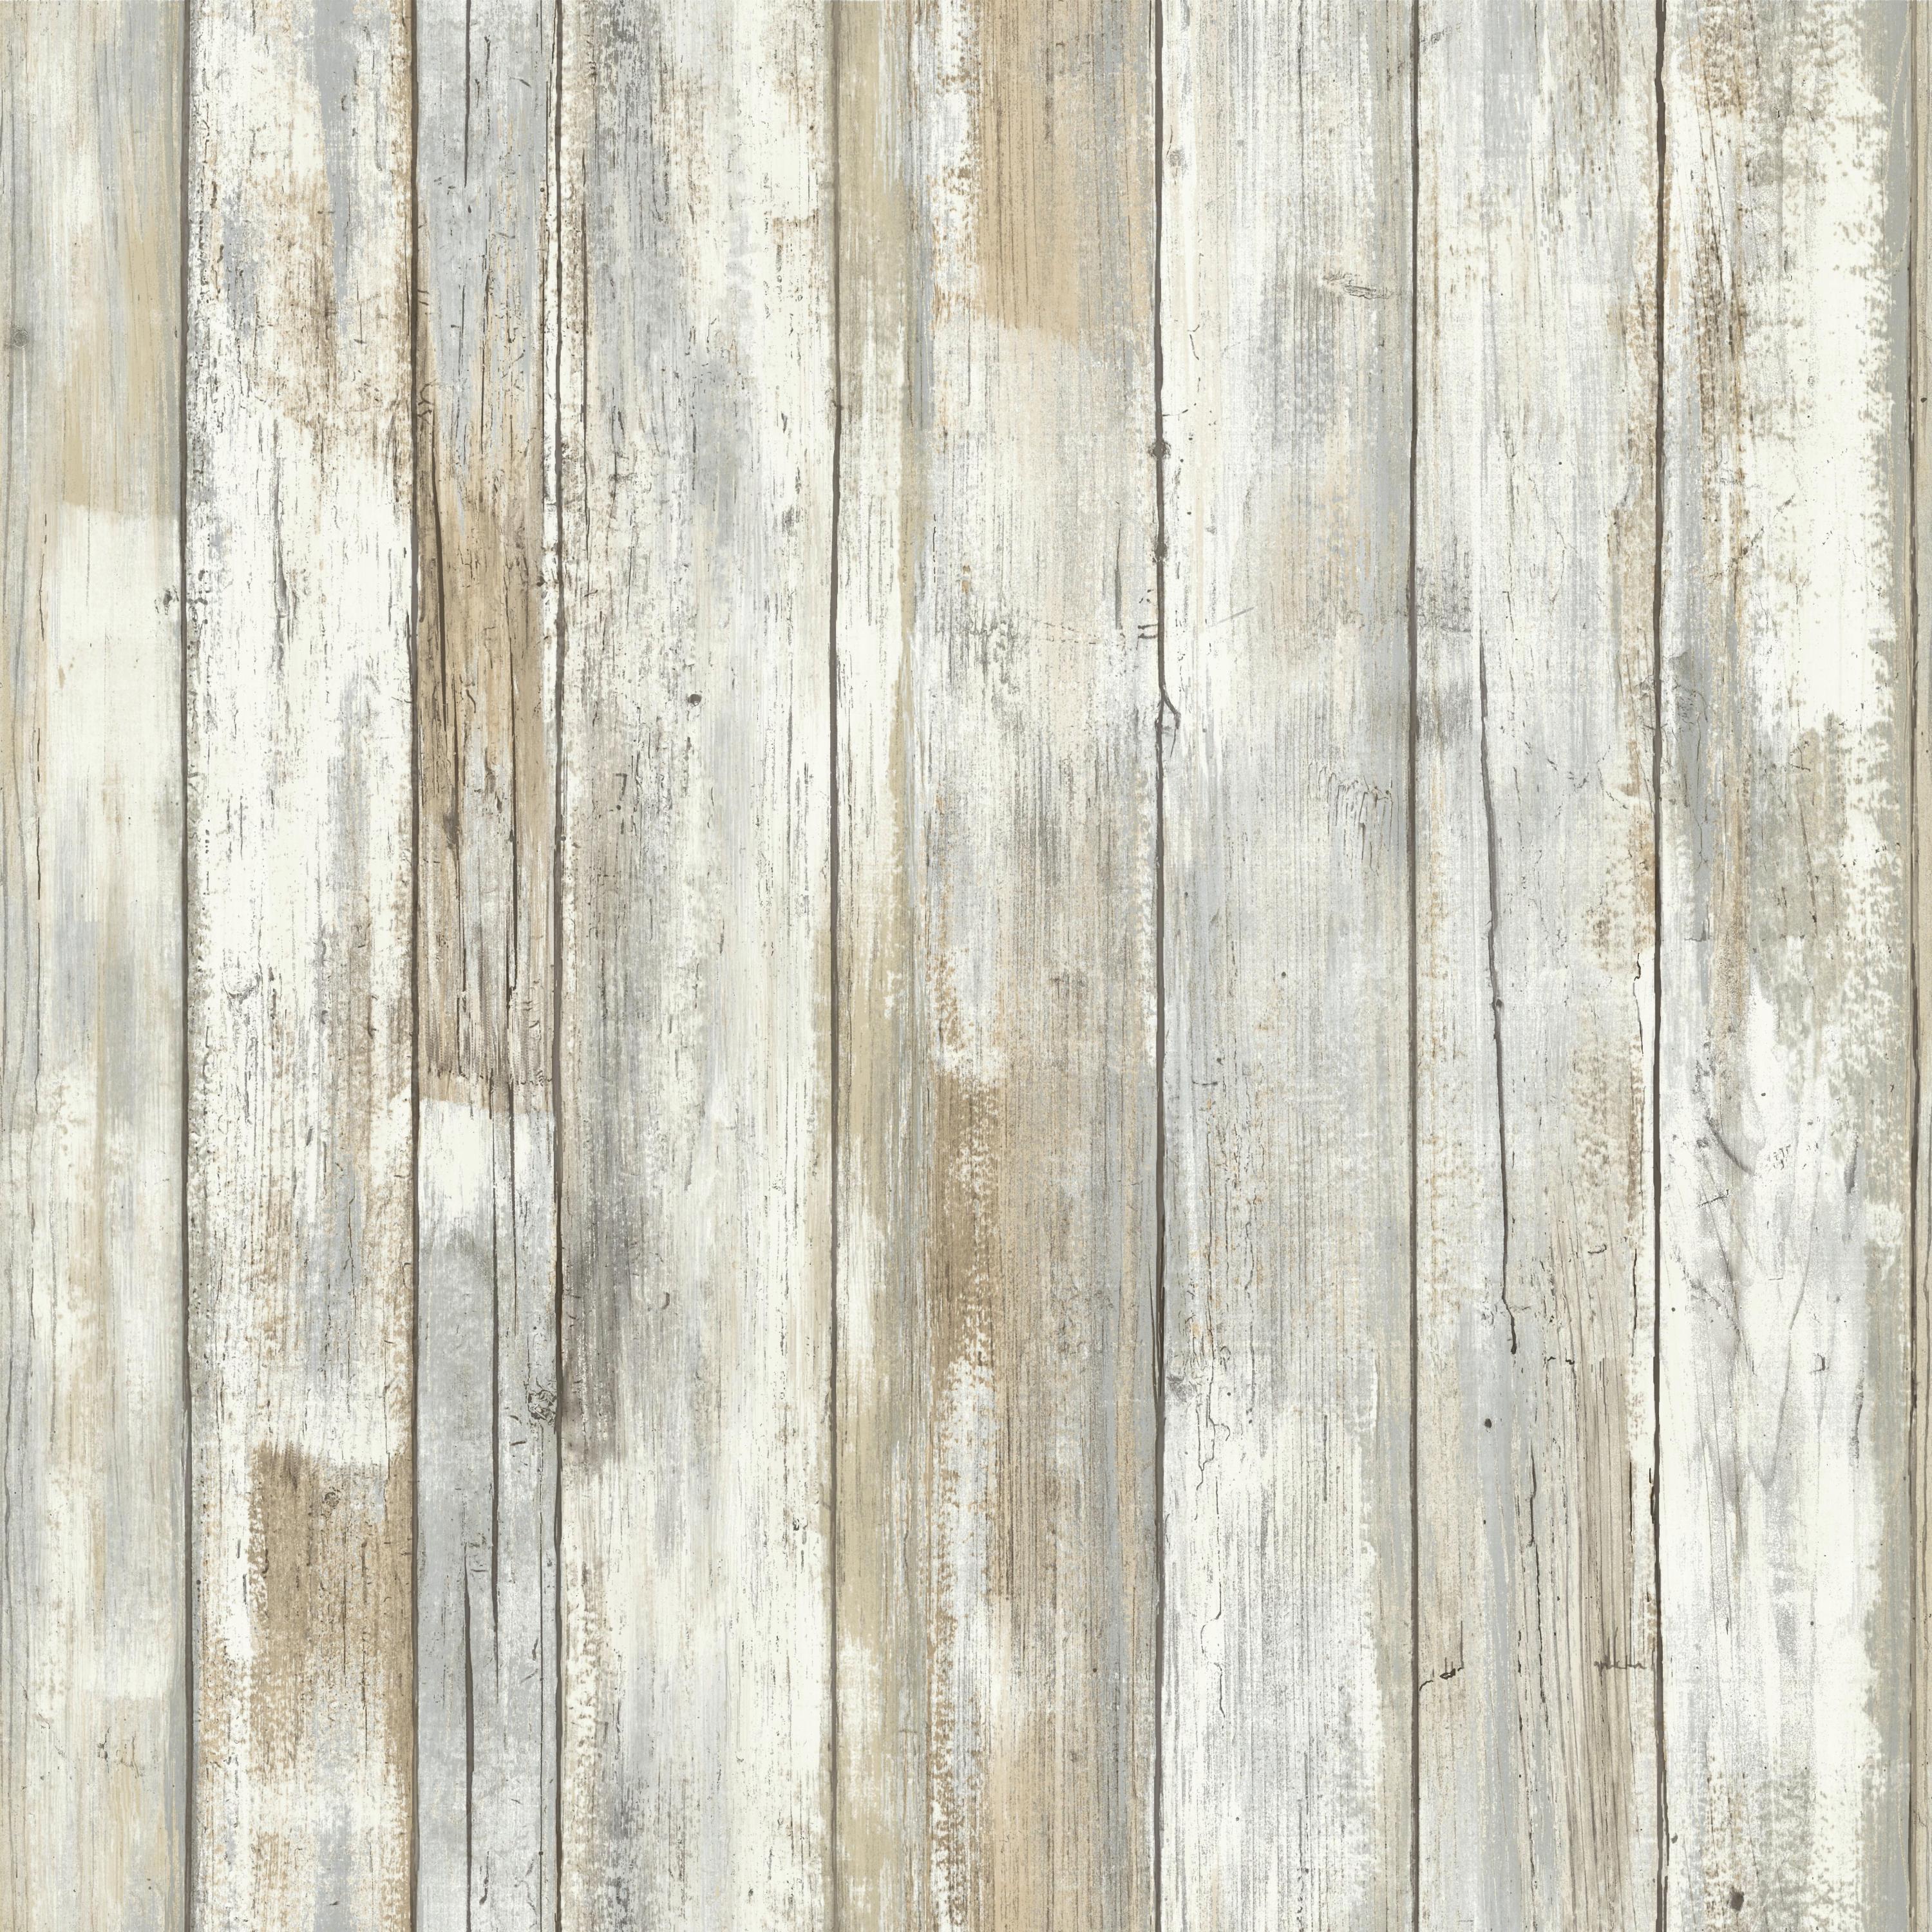 RoomMates - Papel tapiz de decoración de pared de madera y cáscara de madera desgastada